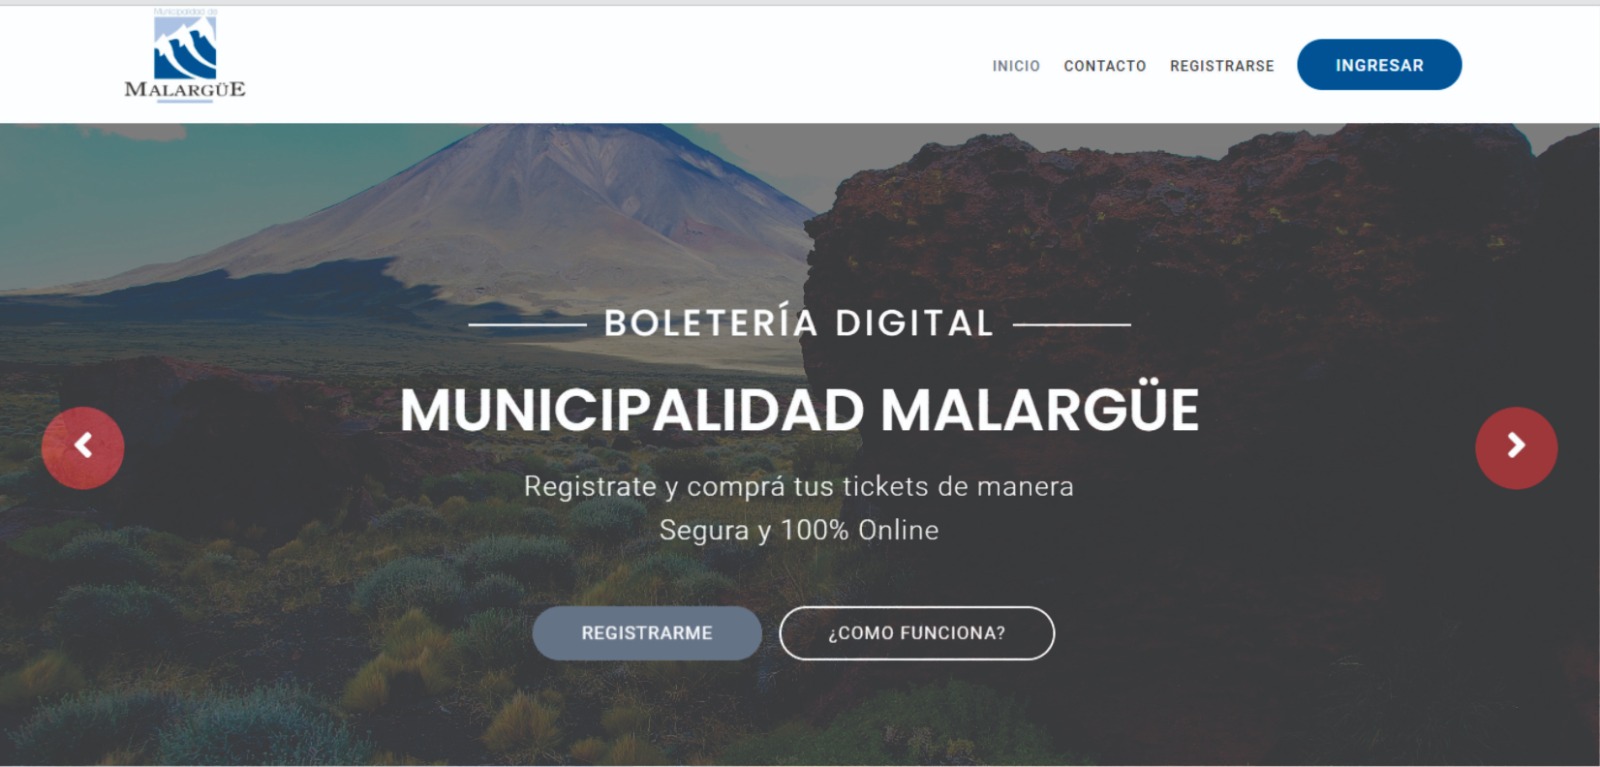 La Municipalidad de Malargüe lanza su boletería digital